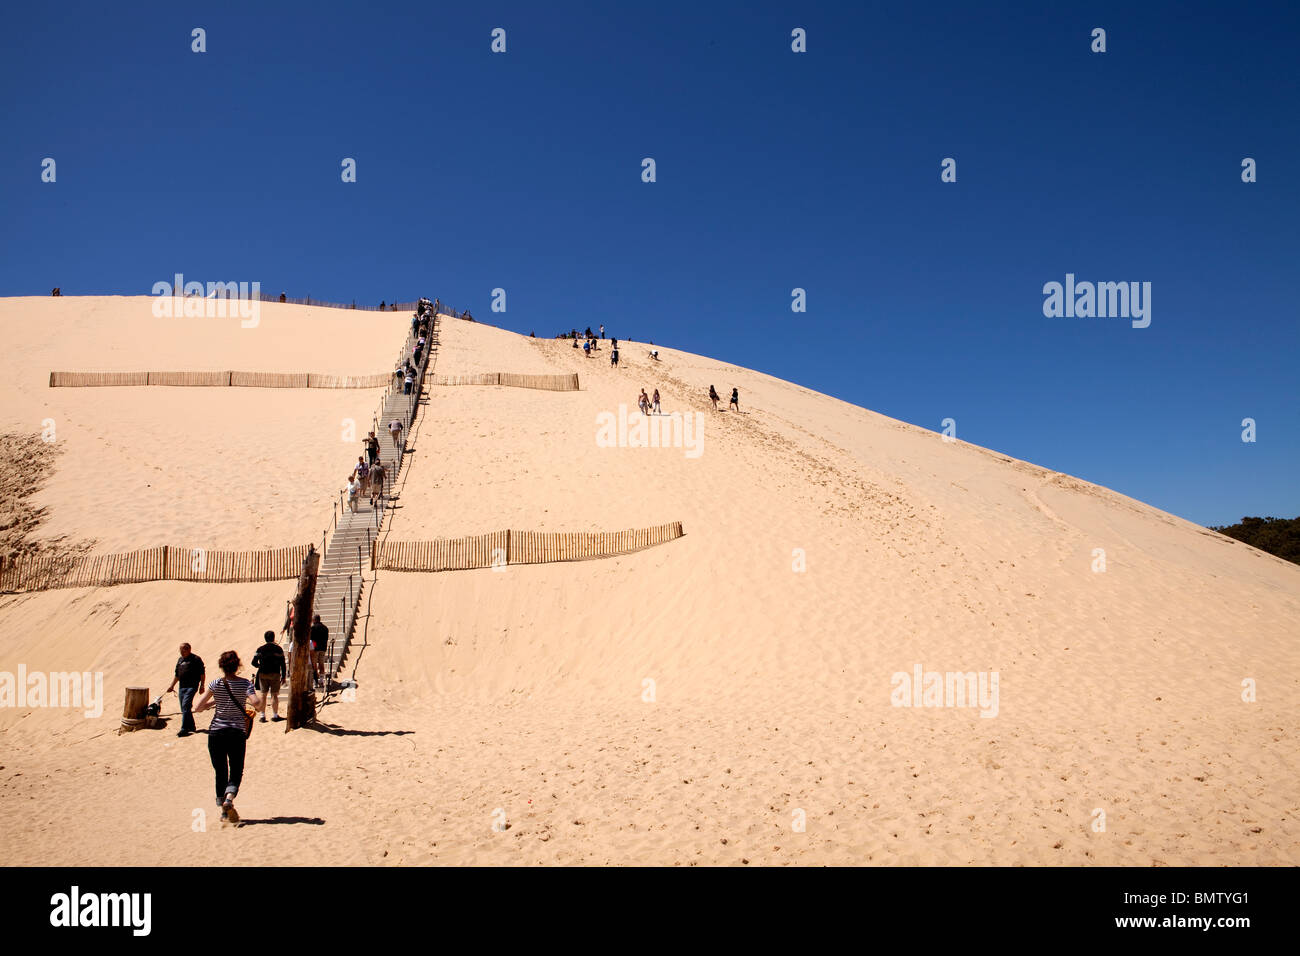 Los turistas subir la gran duna de Pyla, bahía de Arcachon, Francia Foto de stock